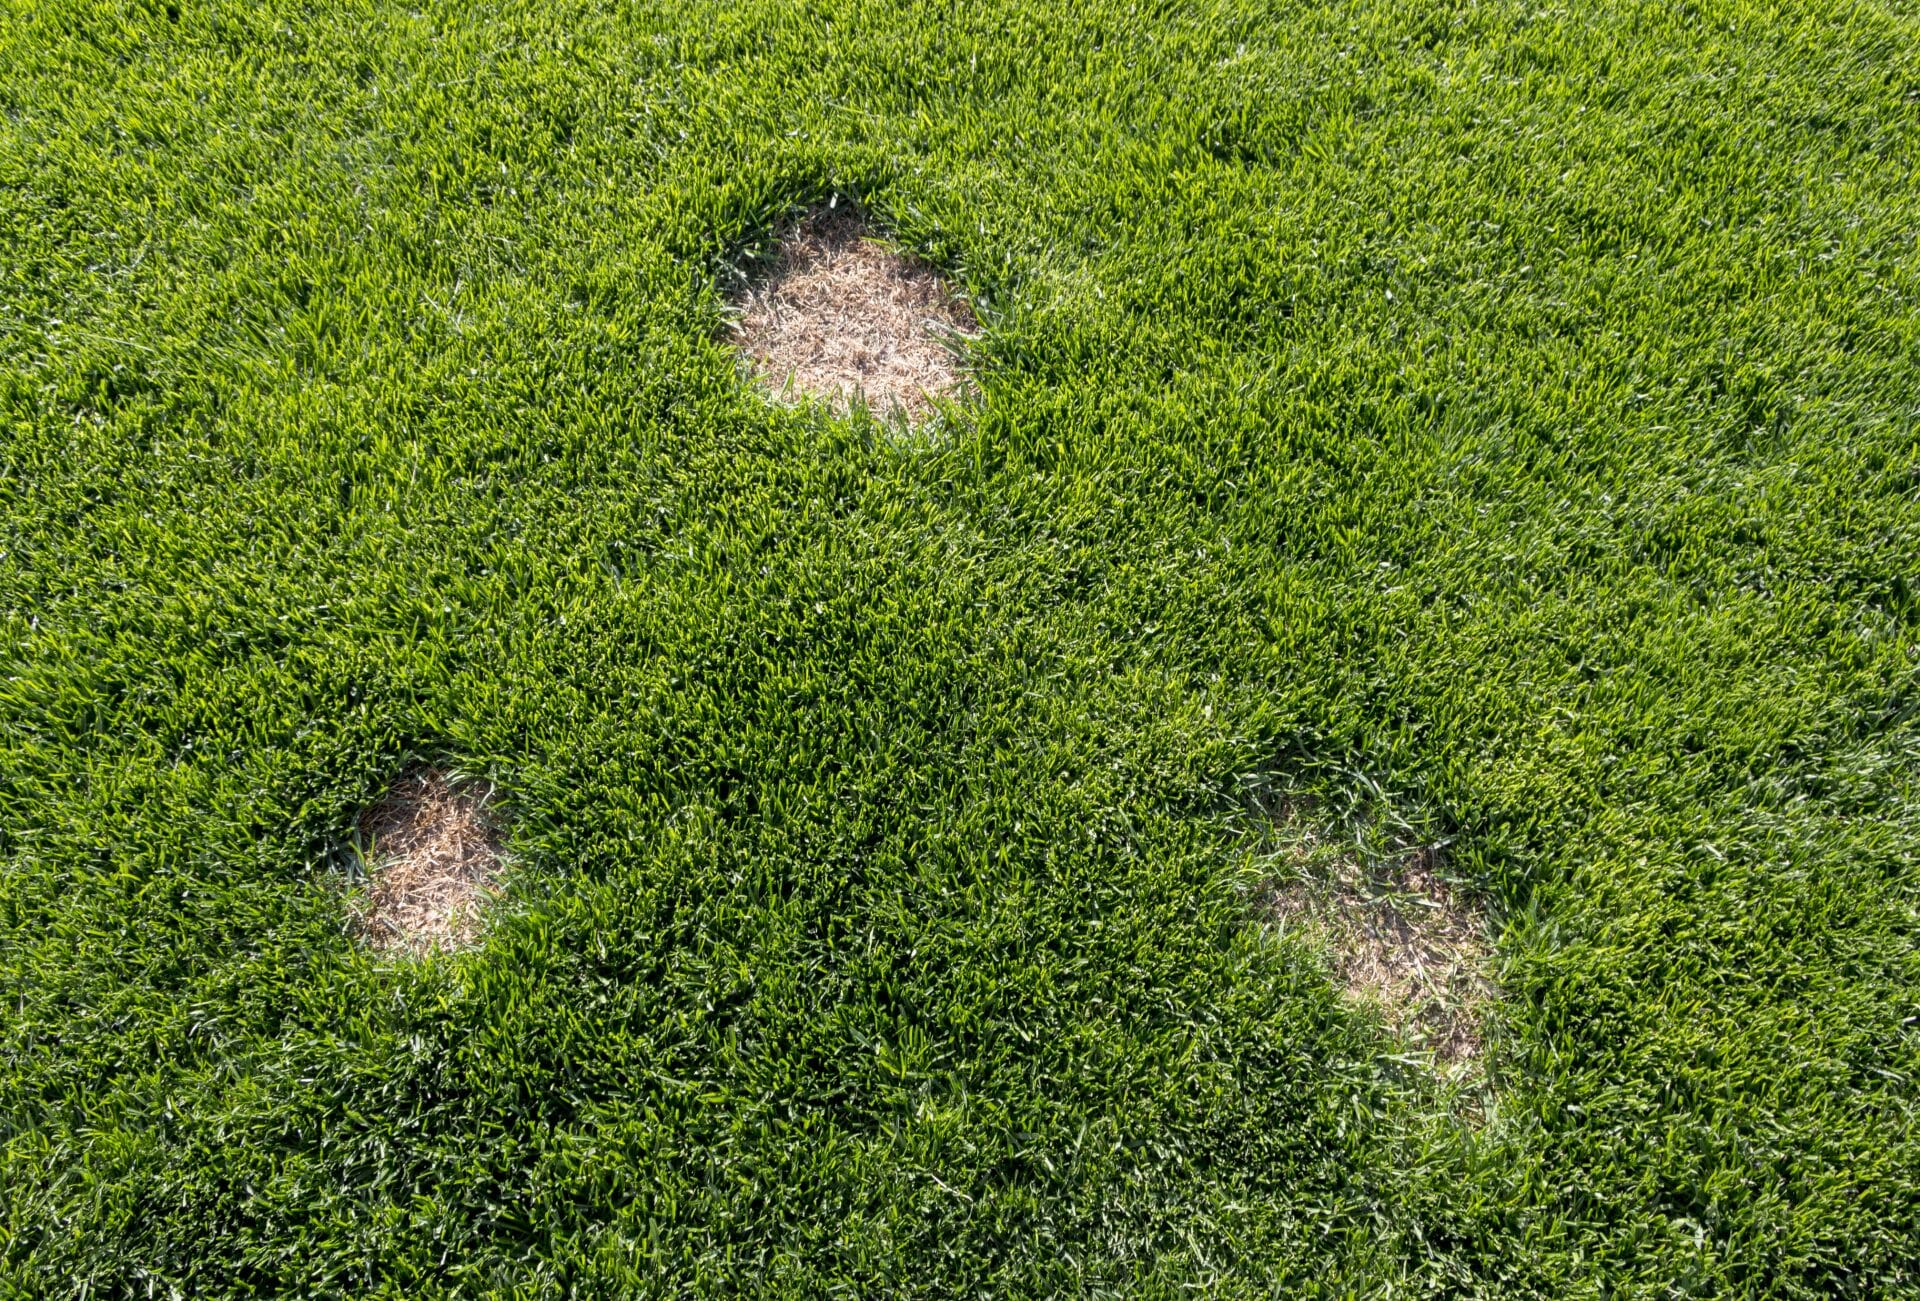 common lawn disease, dead spots